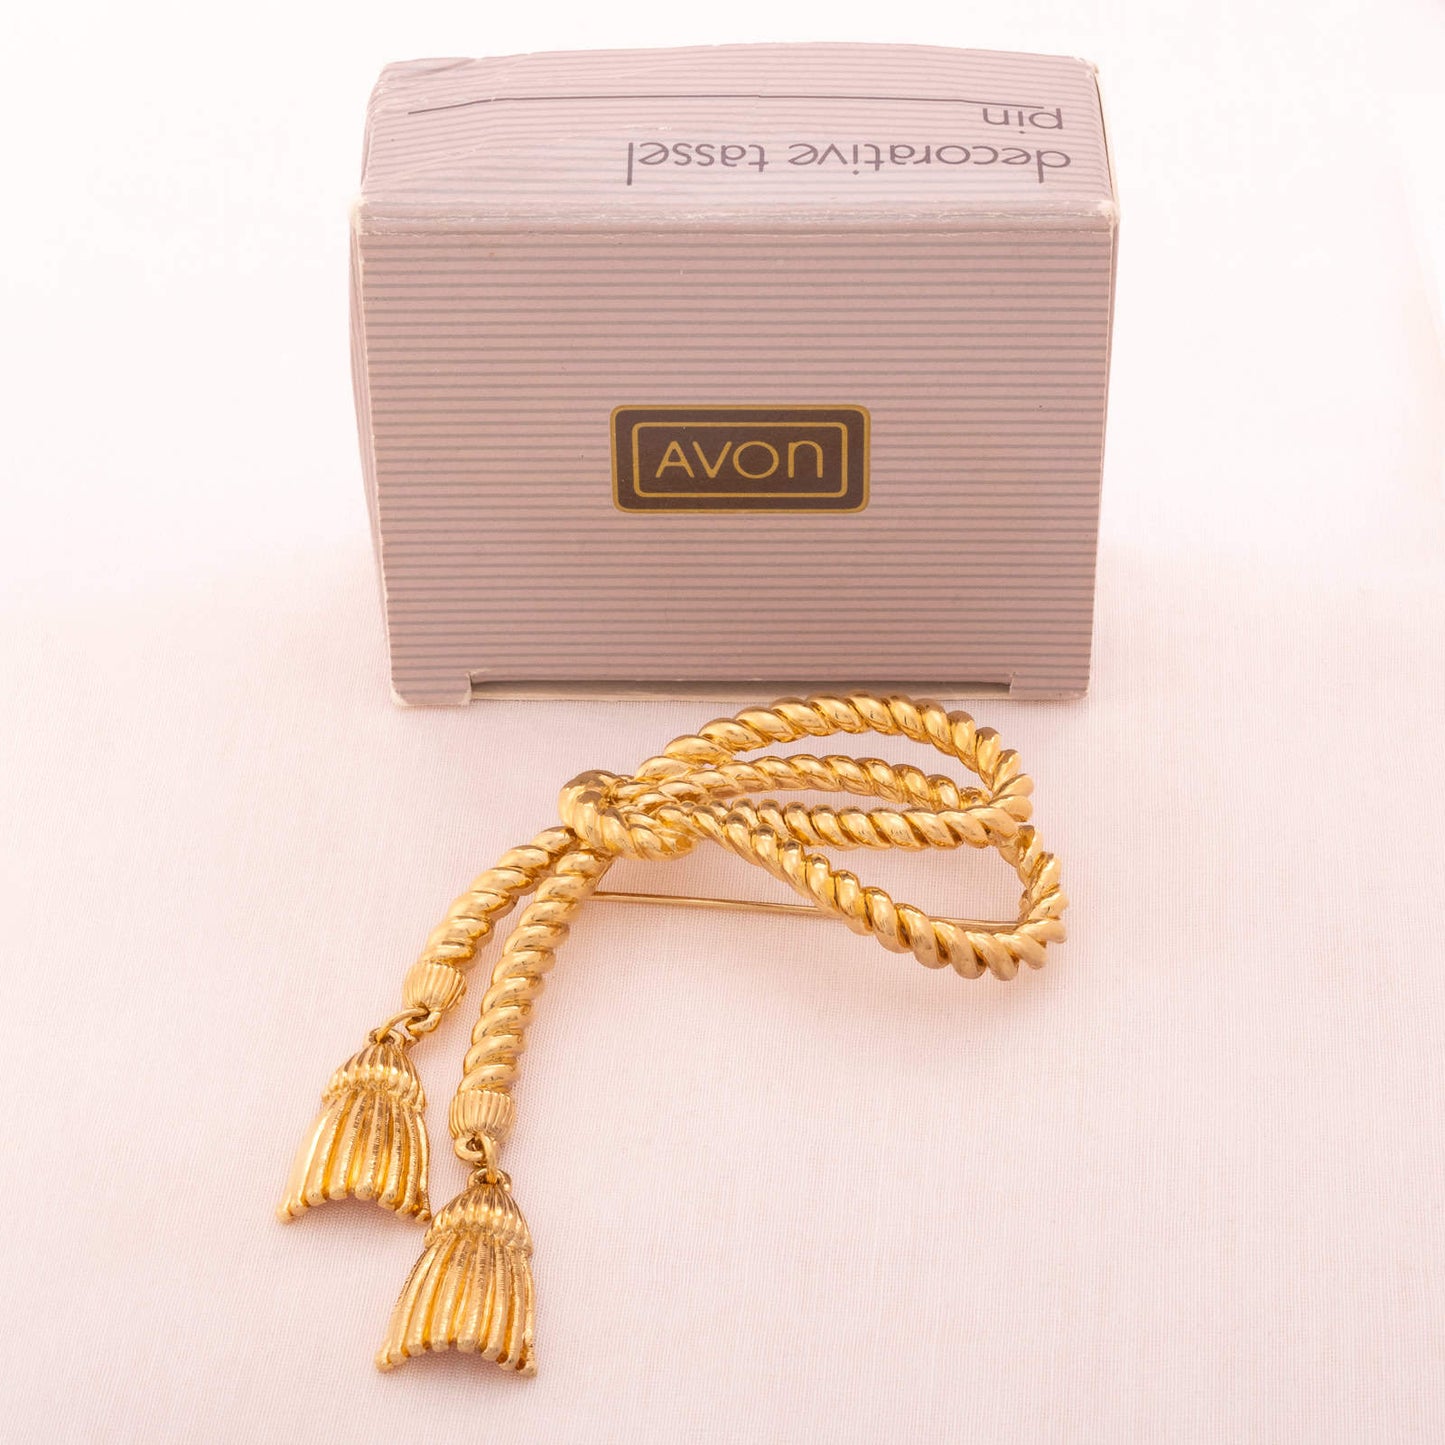 Avon-vergoldete-Quasten-Brosche-1989